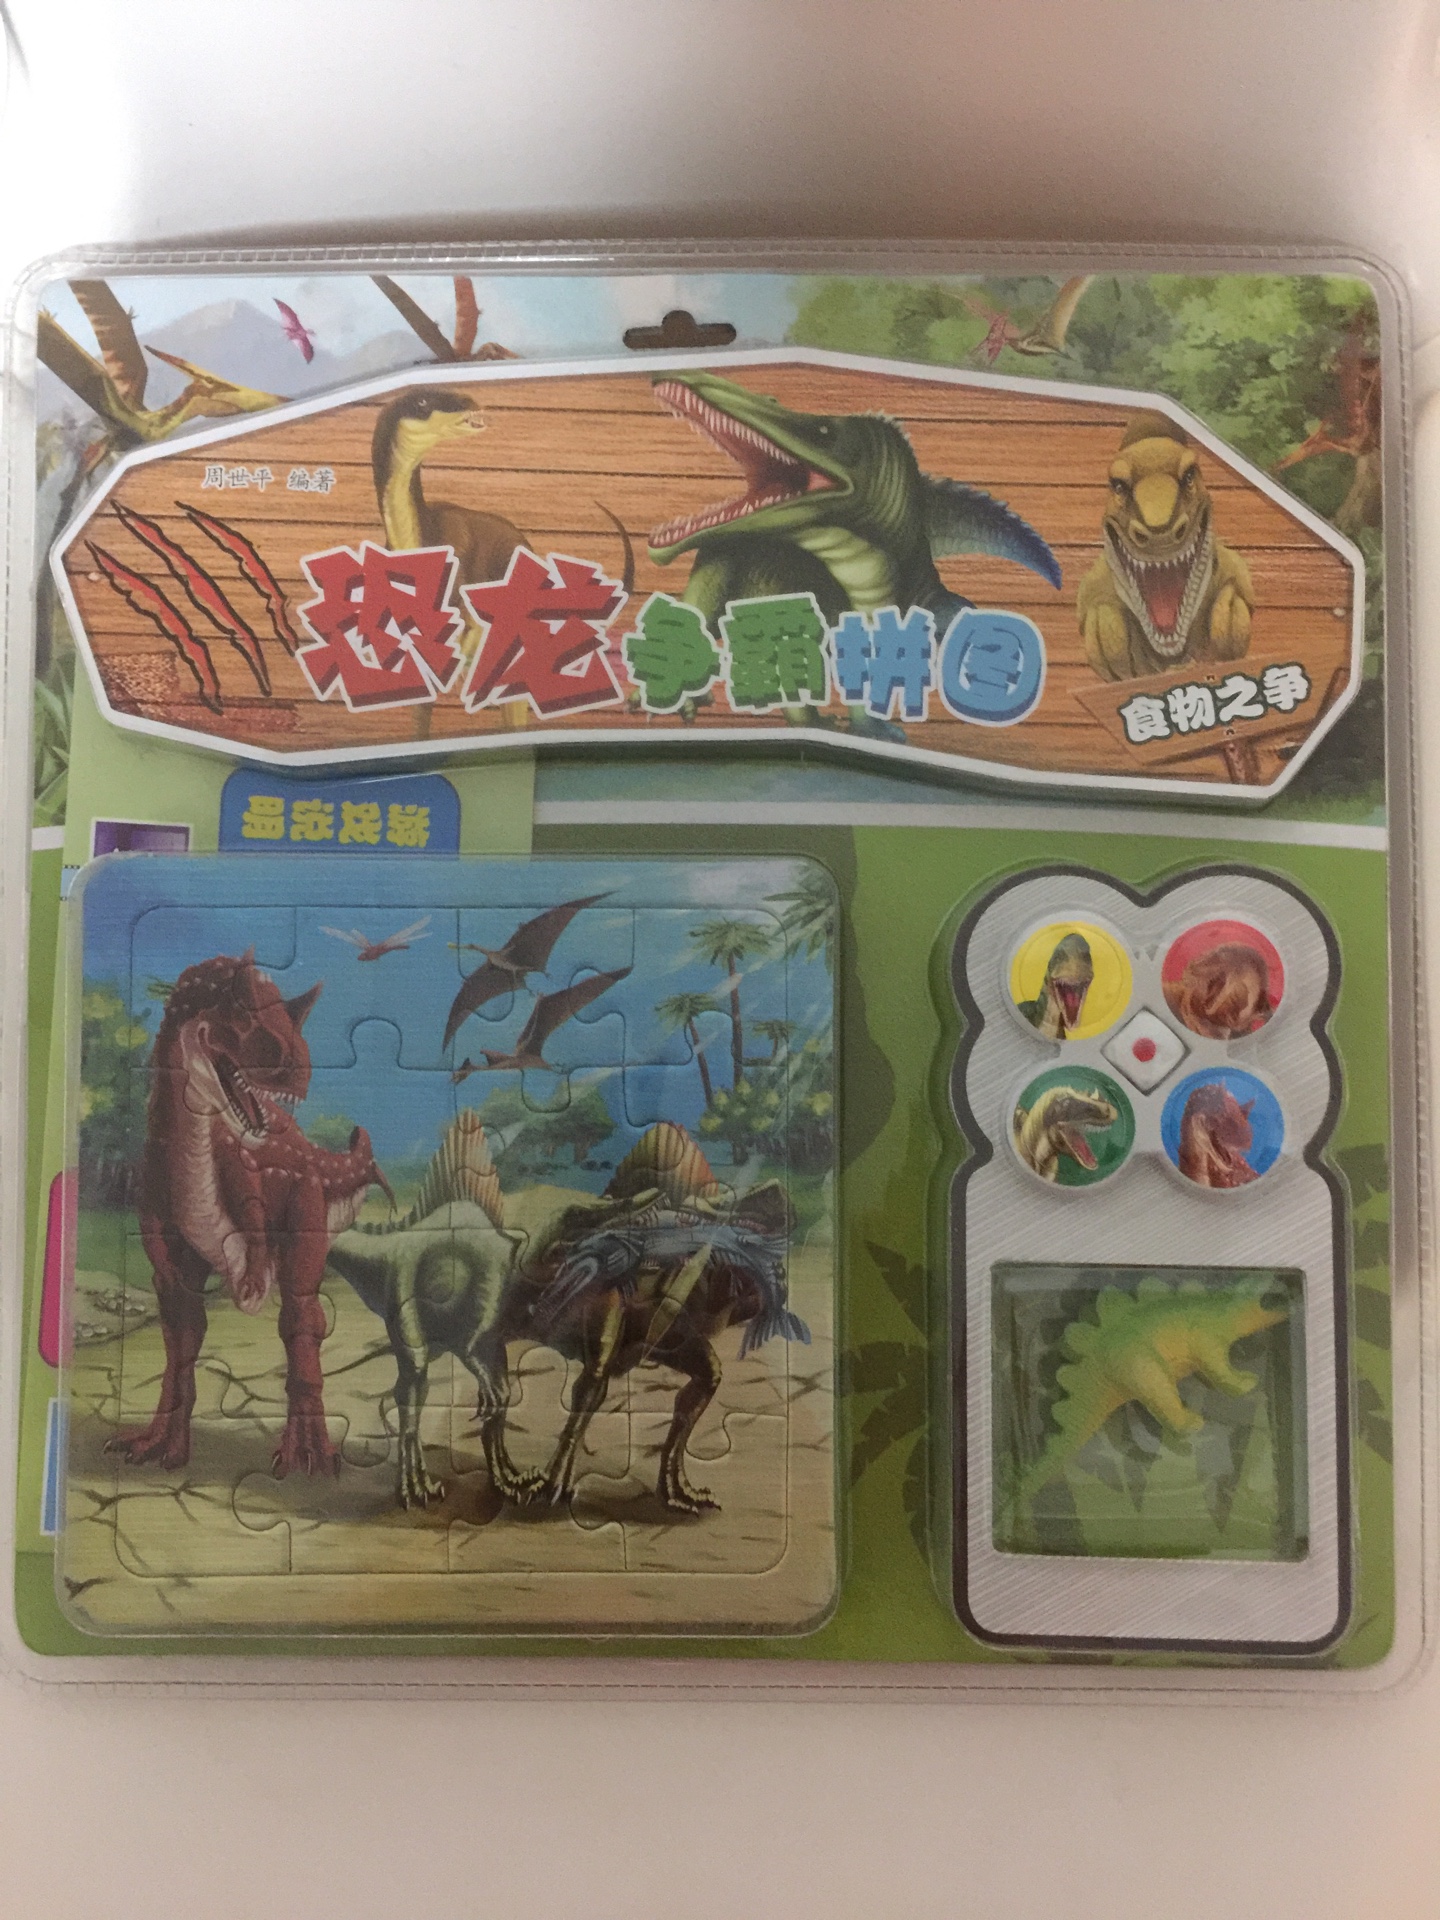 孩子特别喜欢恐龙，这款拼图很有趣，还附带游戏棋。